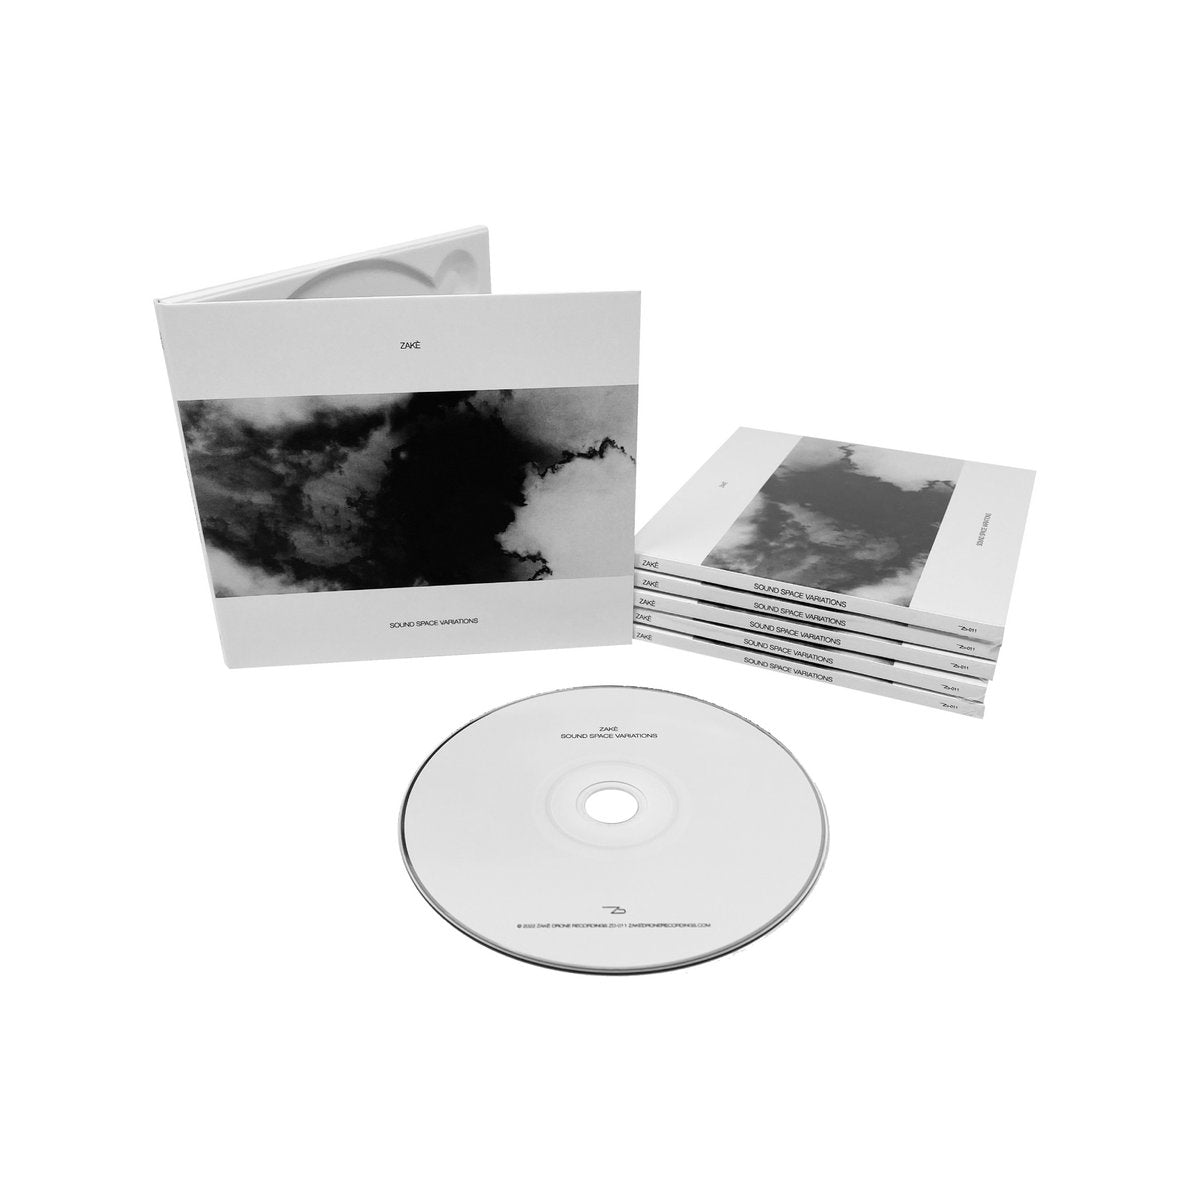 zakè 'Sound Space Variations' [CD]